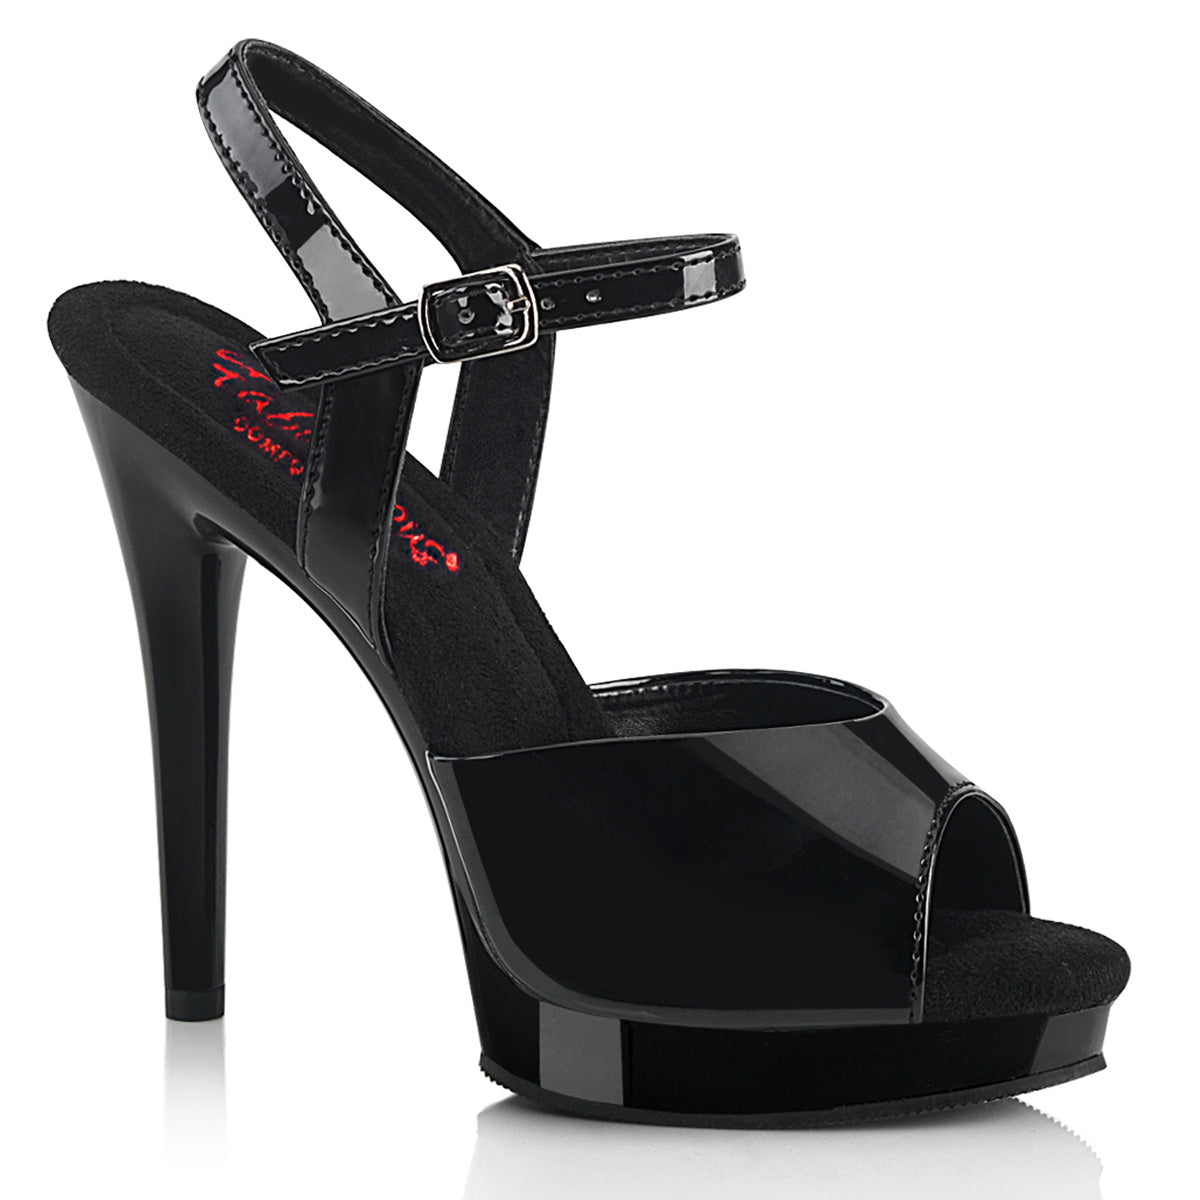 5 Inch (123mm) Heel, 3/4 Inch (16mm) Black Pat Platform Comfort Width Ankle Strap Sandal